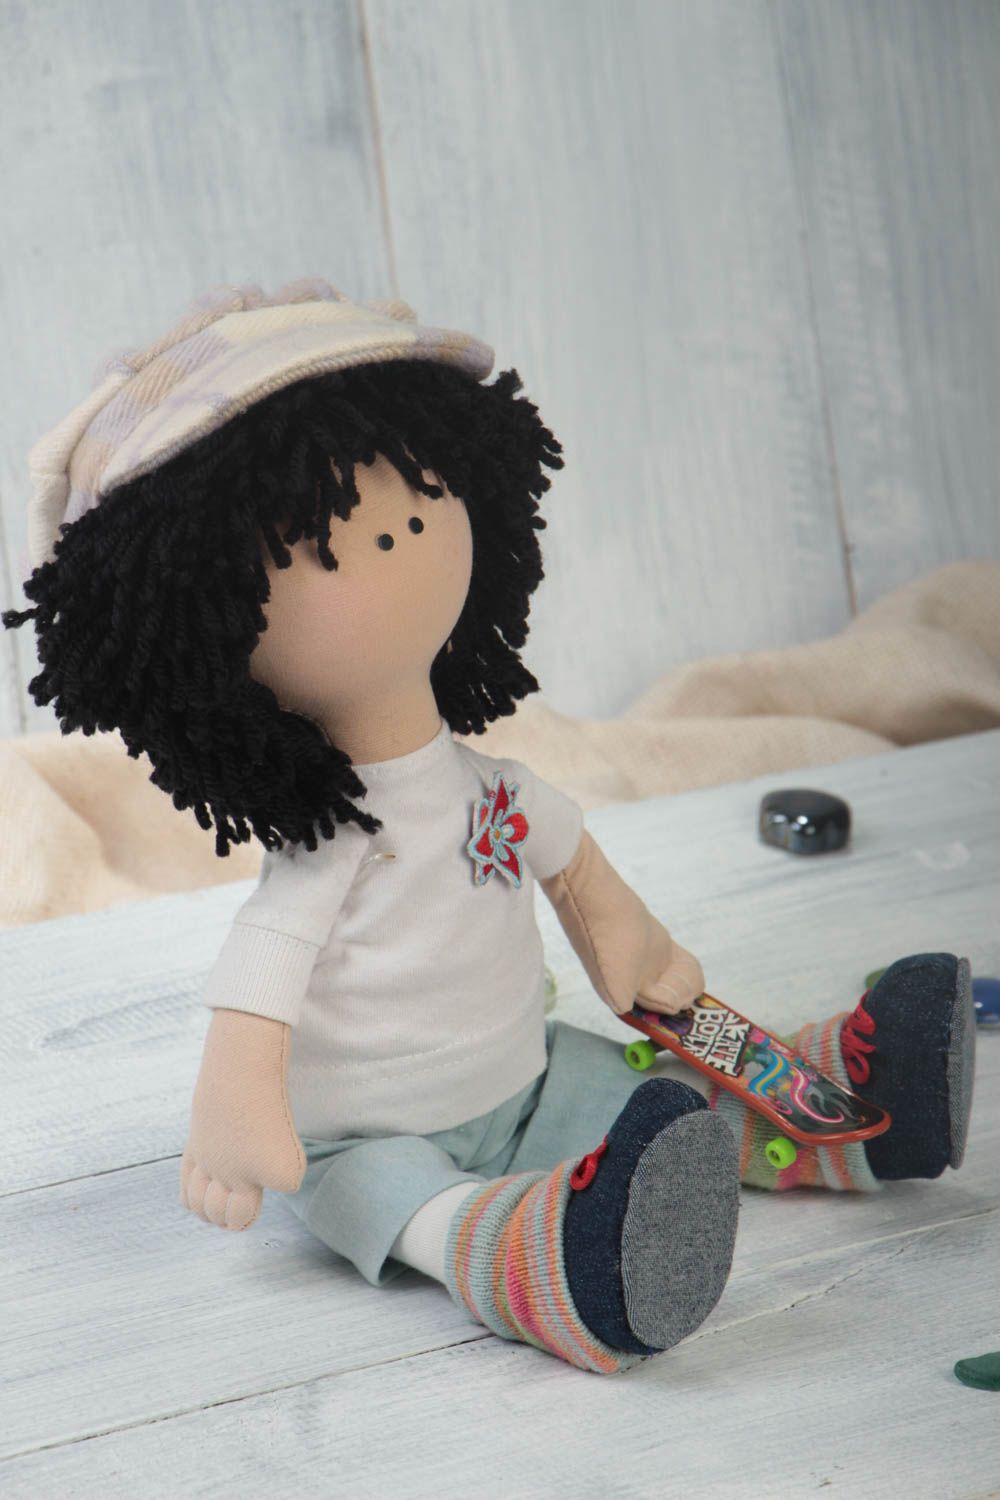 Designer handmade Puppe aus Stoff originell für Haus Interieur mit Haaren foto 1